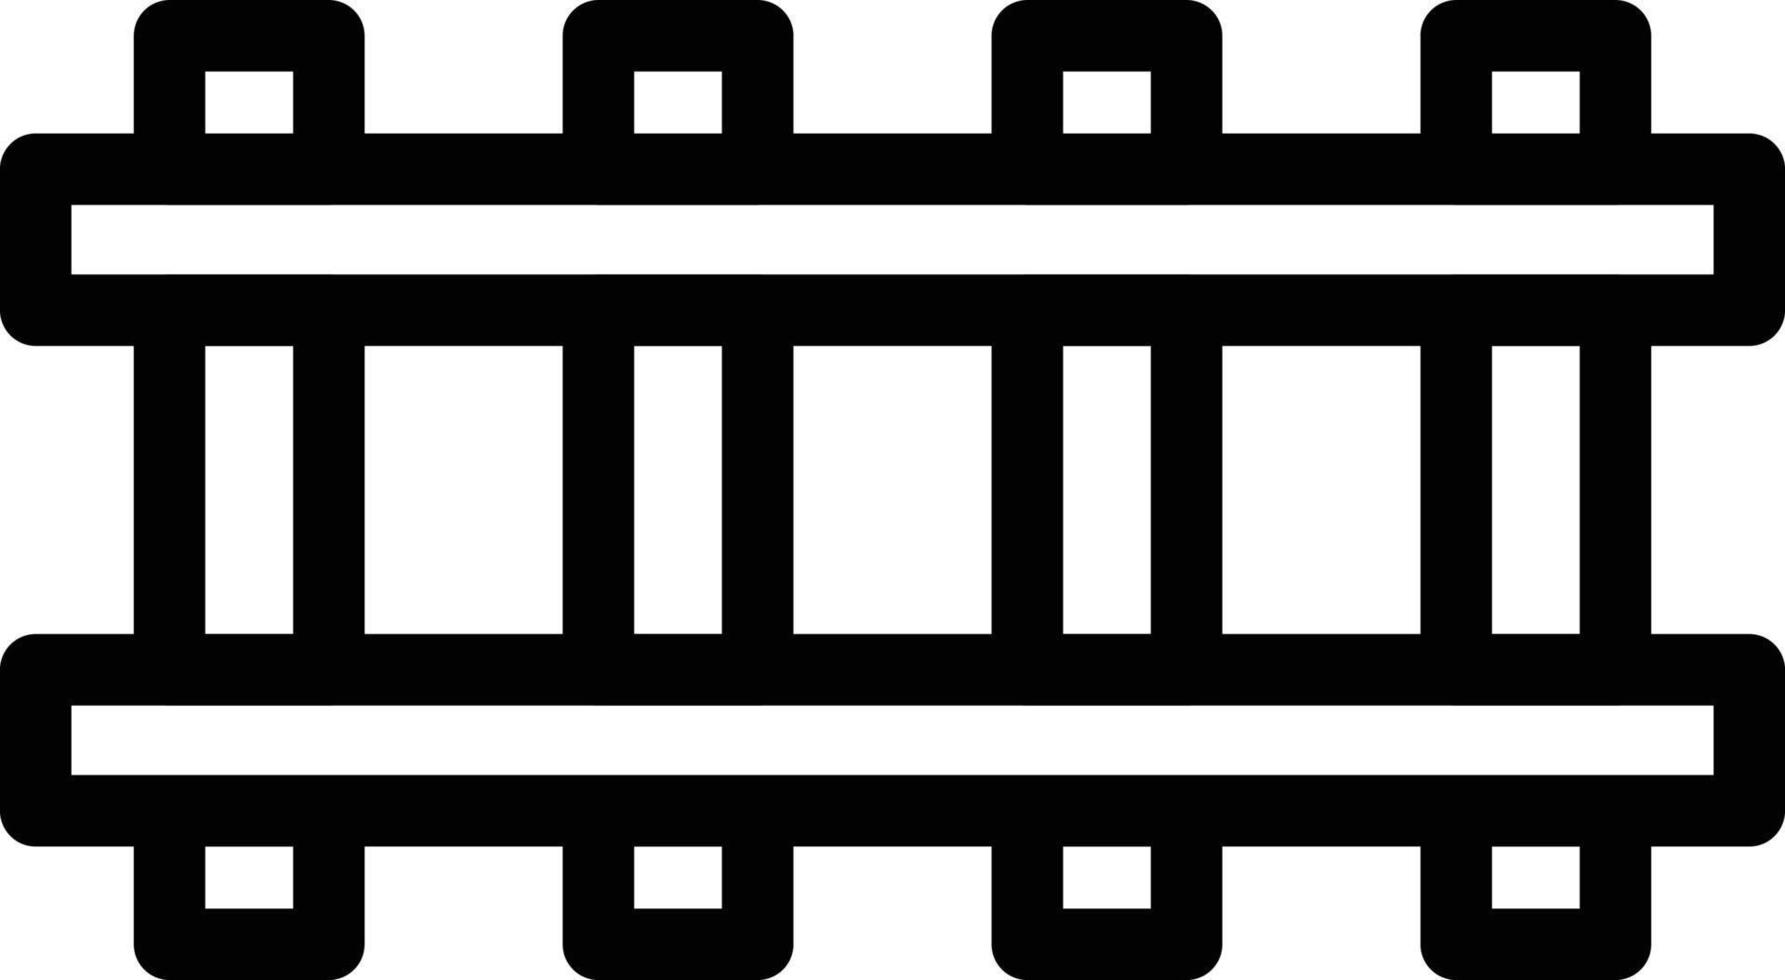 järnvägsspår vektor illustration på en bakgrund. premium kvalitet symbols.vector ikoner för koncept och grafisk design.